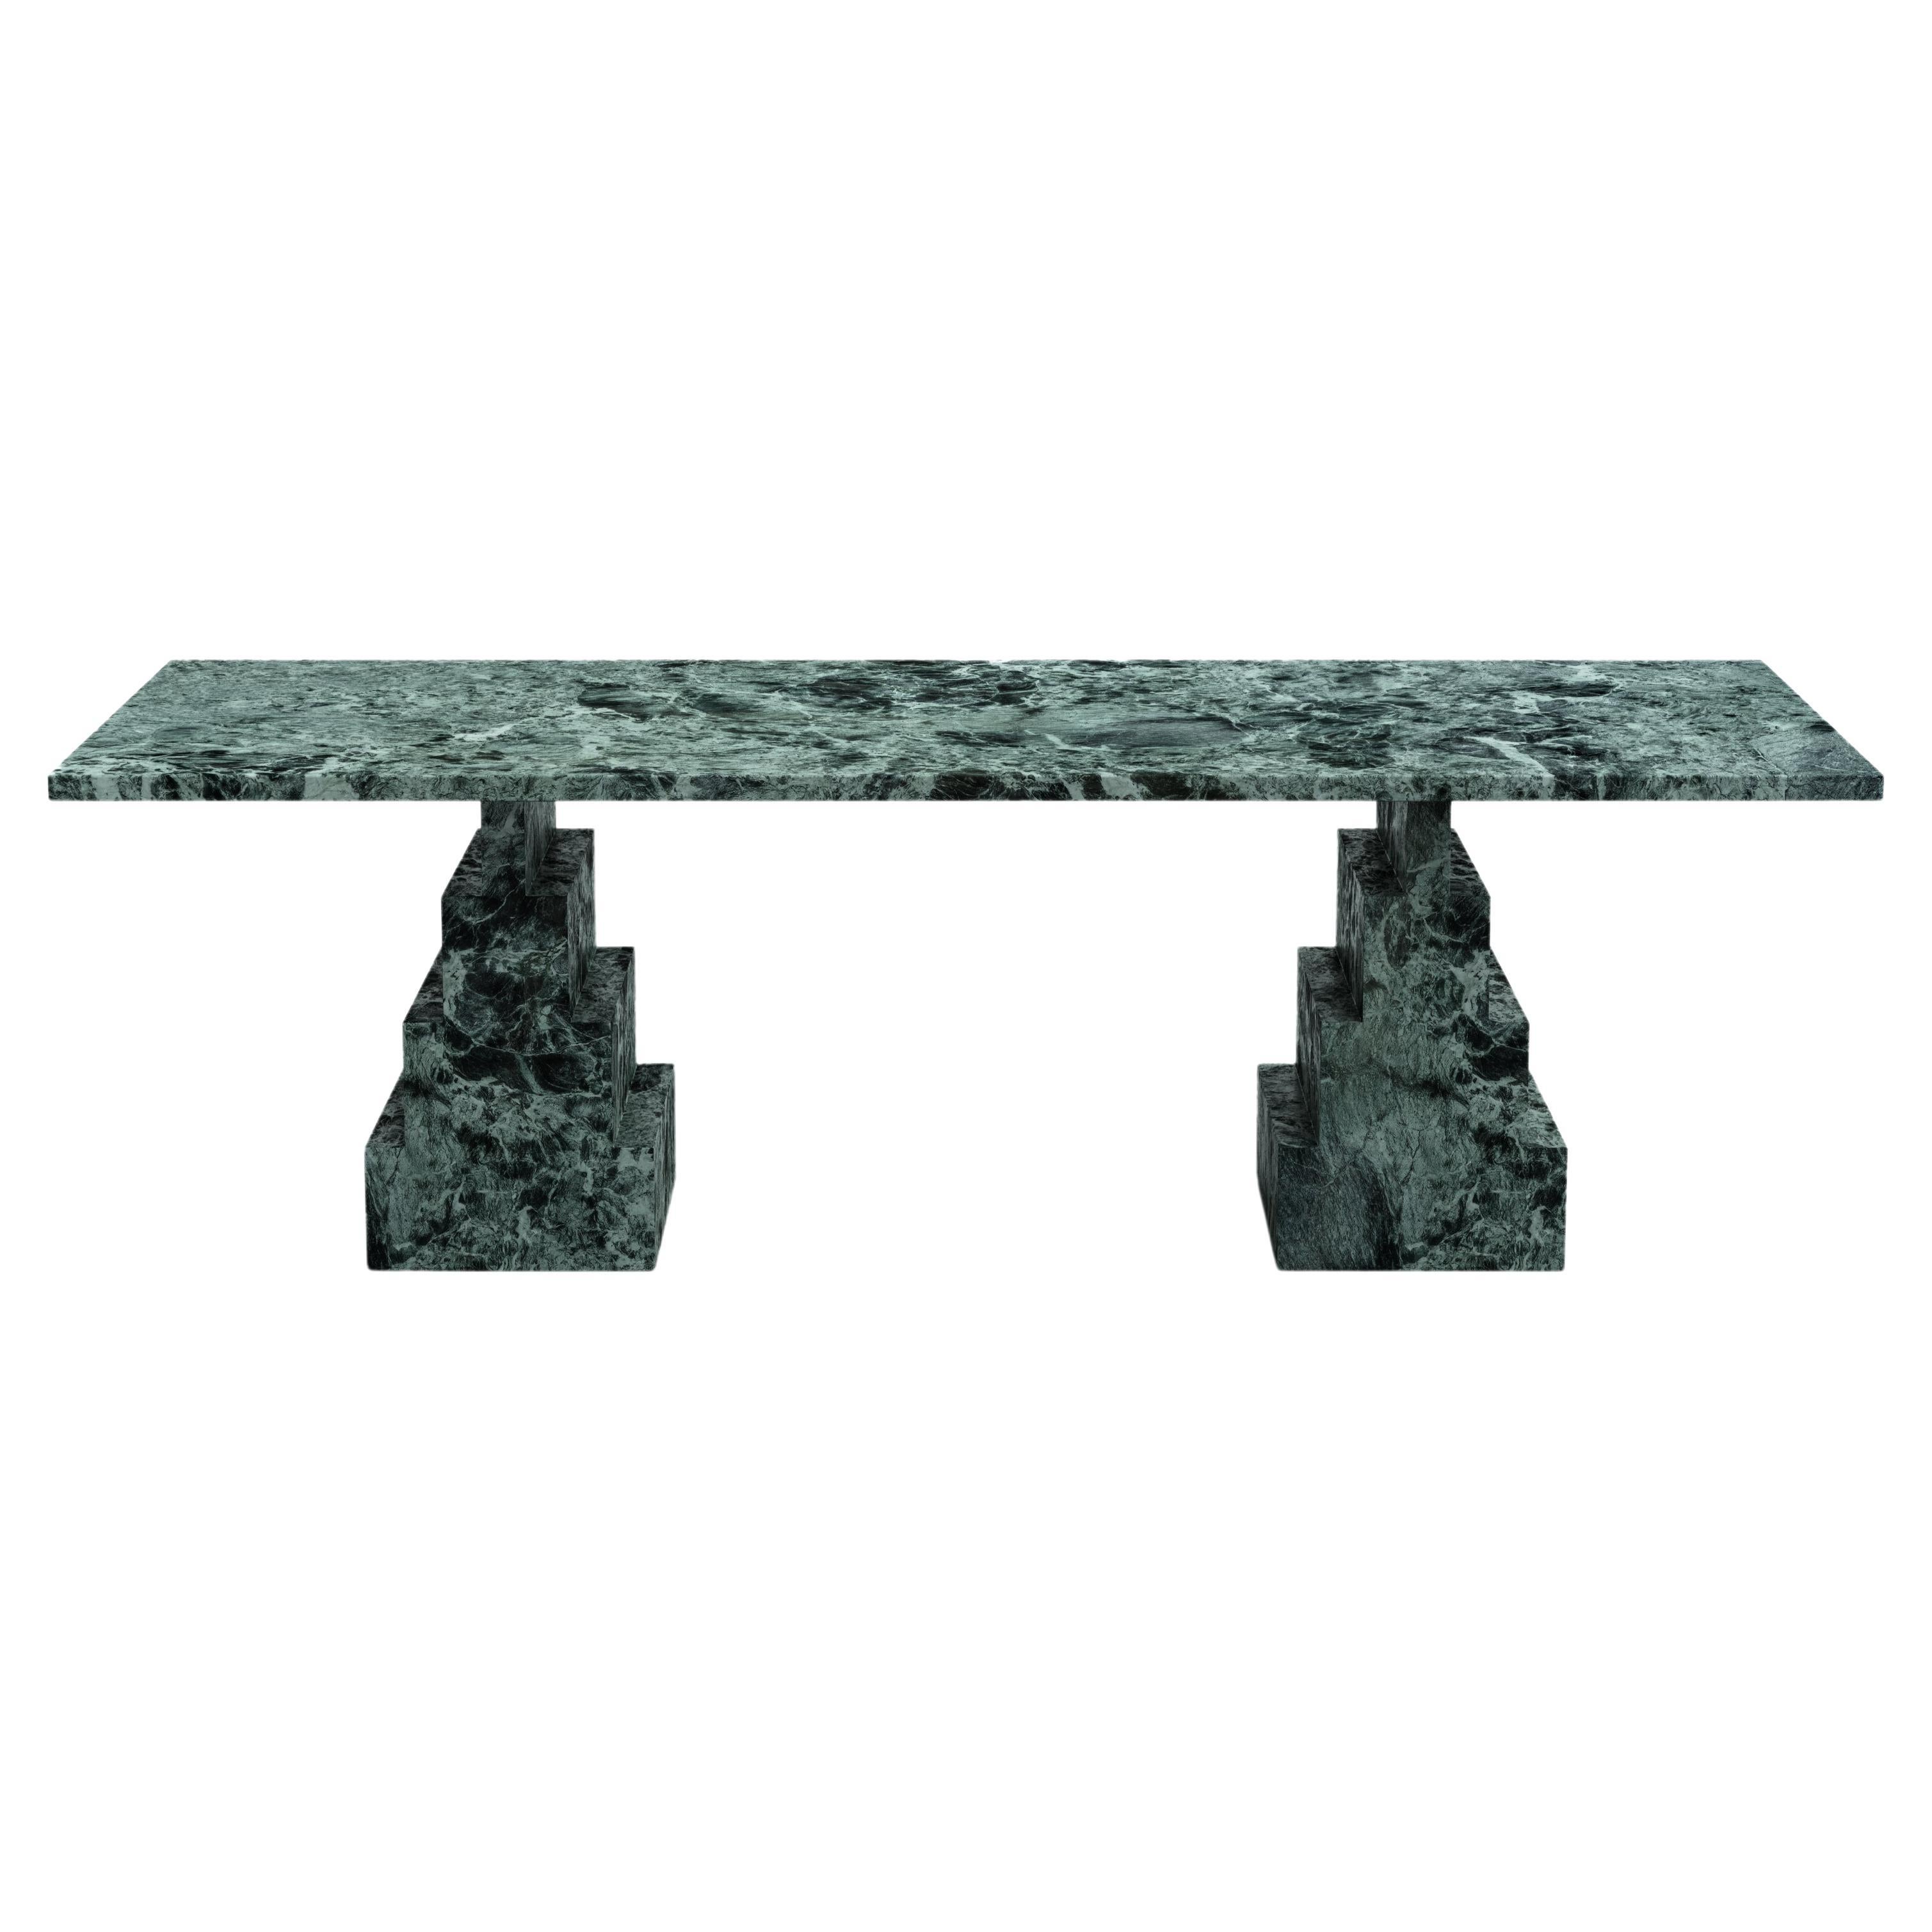 Table de salle à manger NORDST NIKO, marbre vert italien, design moderne danois